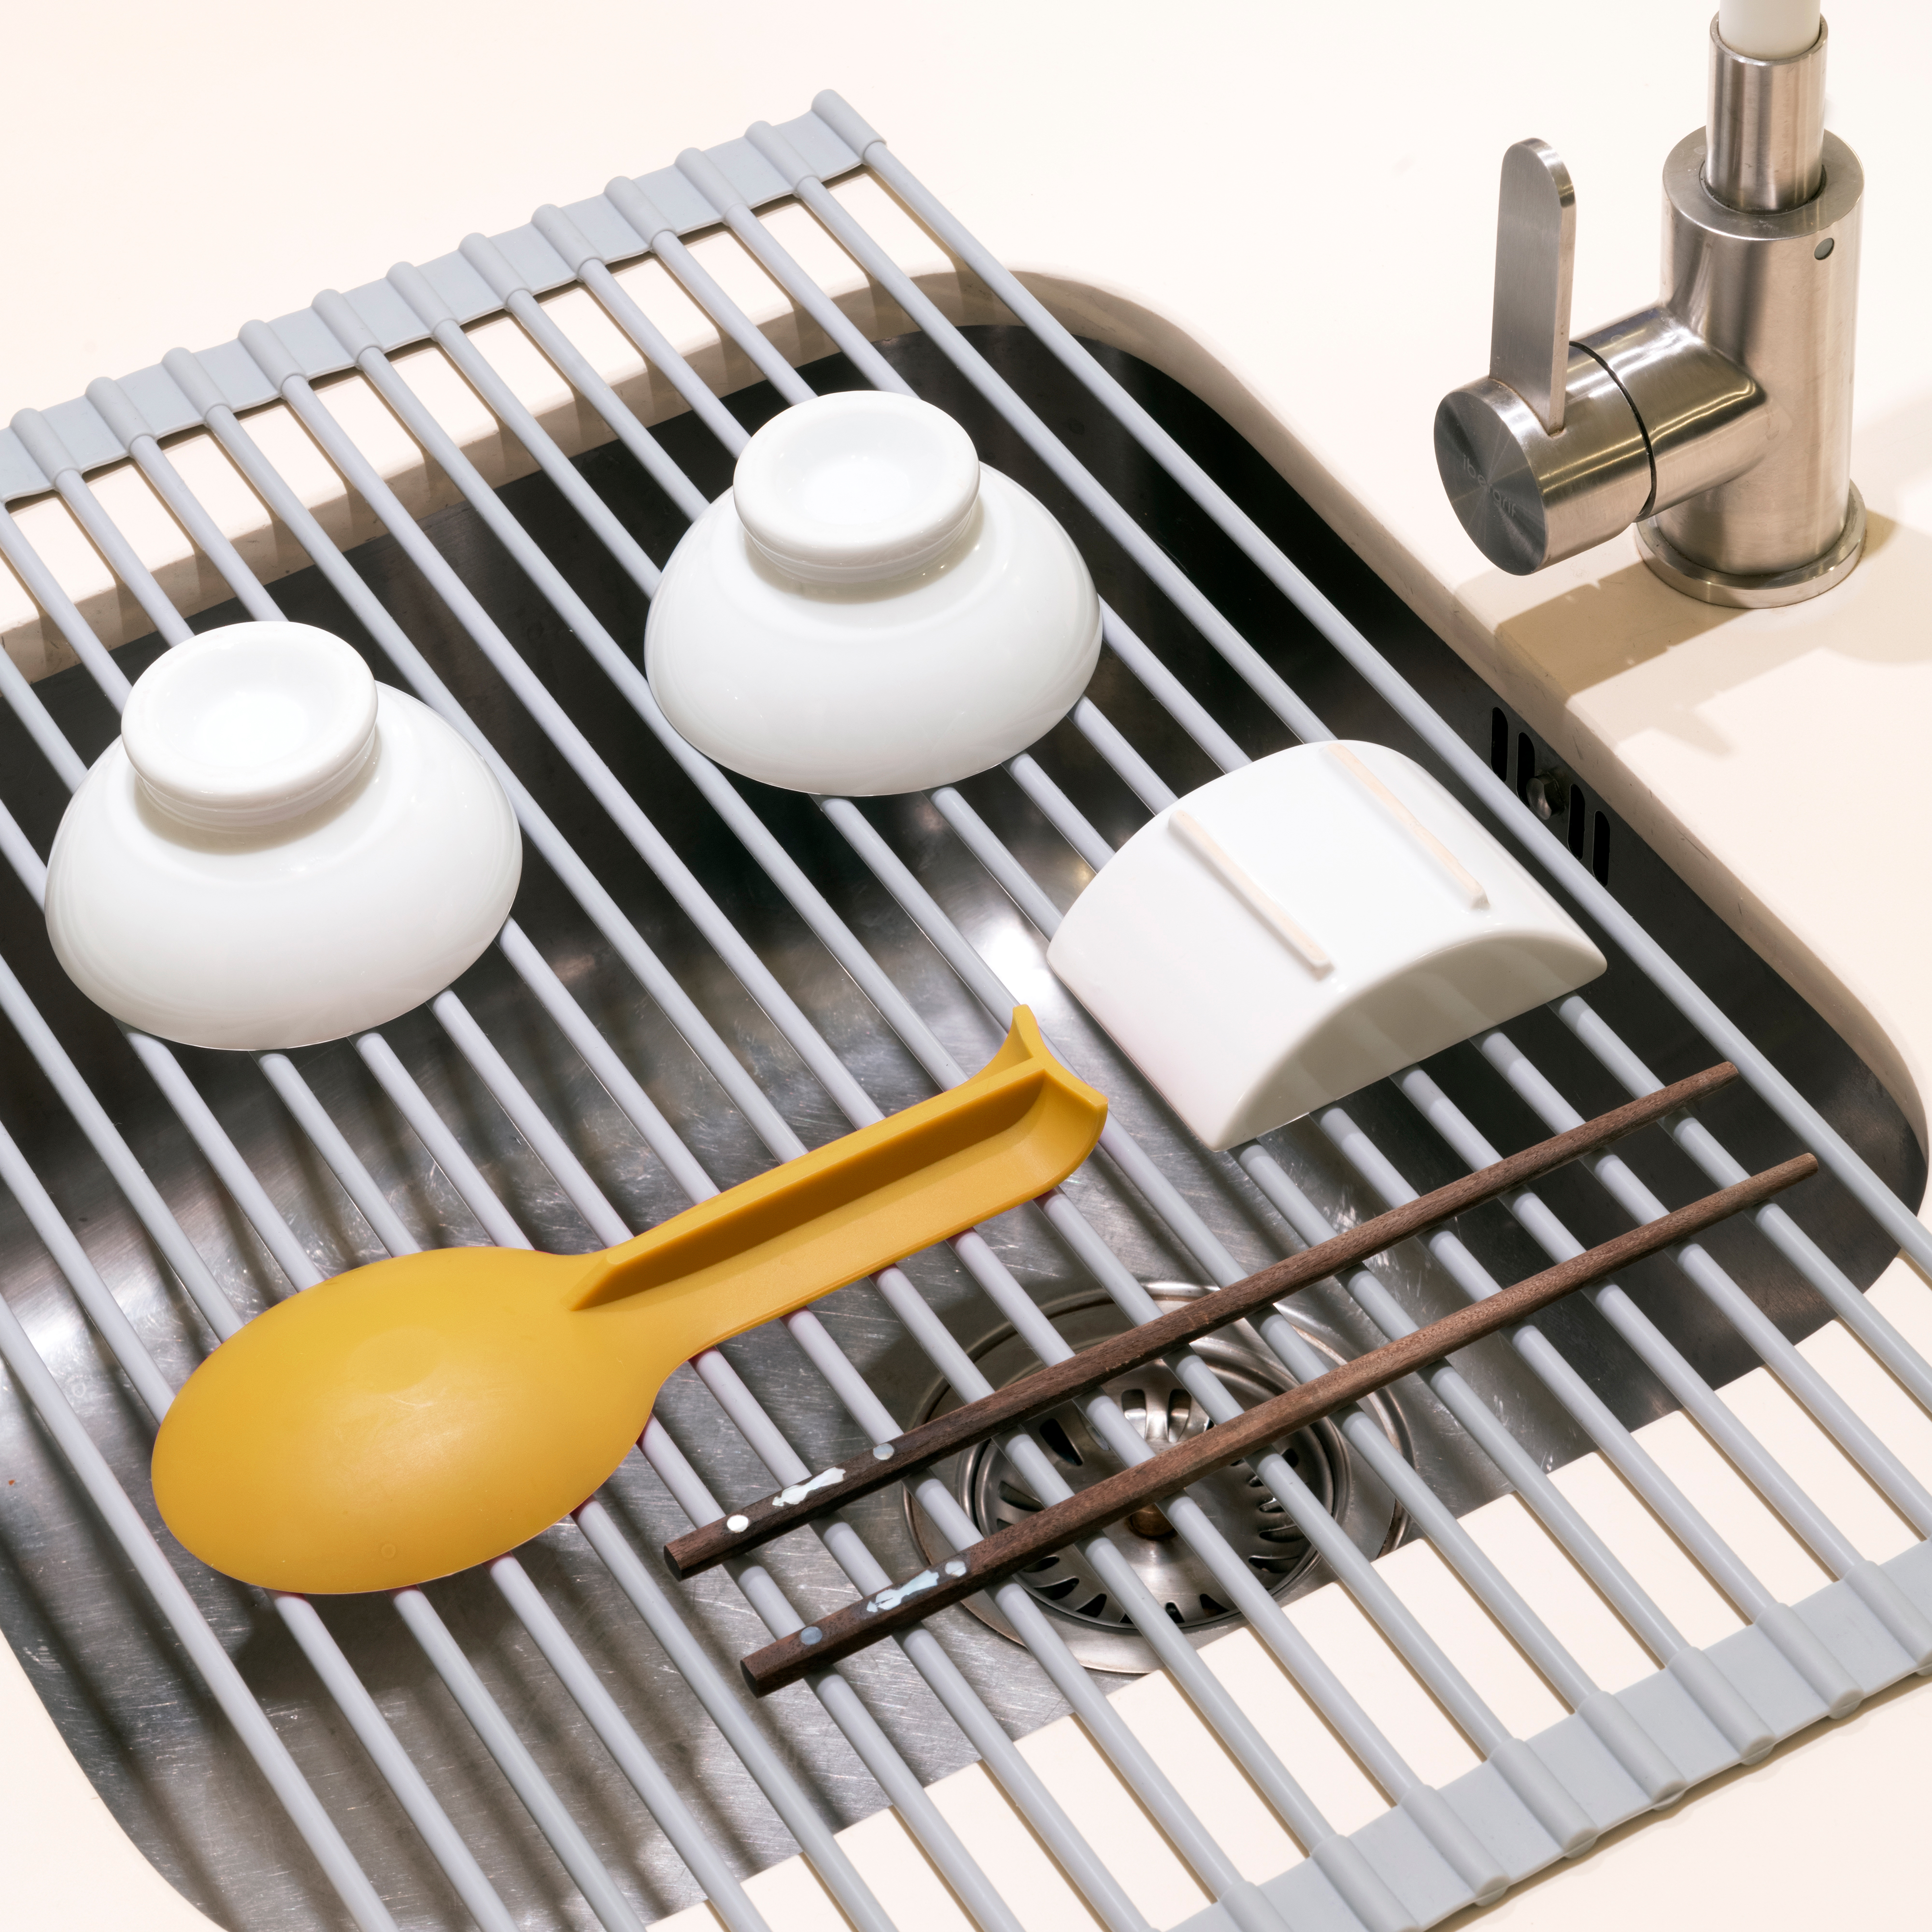  Egouttoir a vaisselle flexible en silicone et acier, Plastique gris, Acier et Plastique.